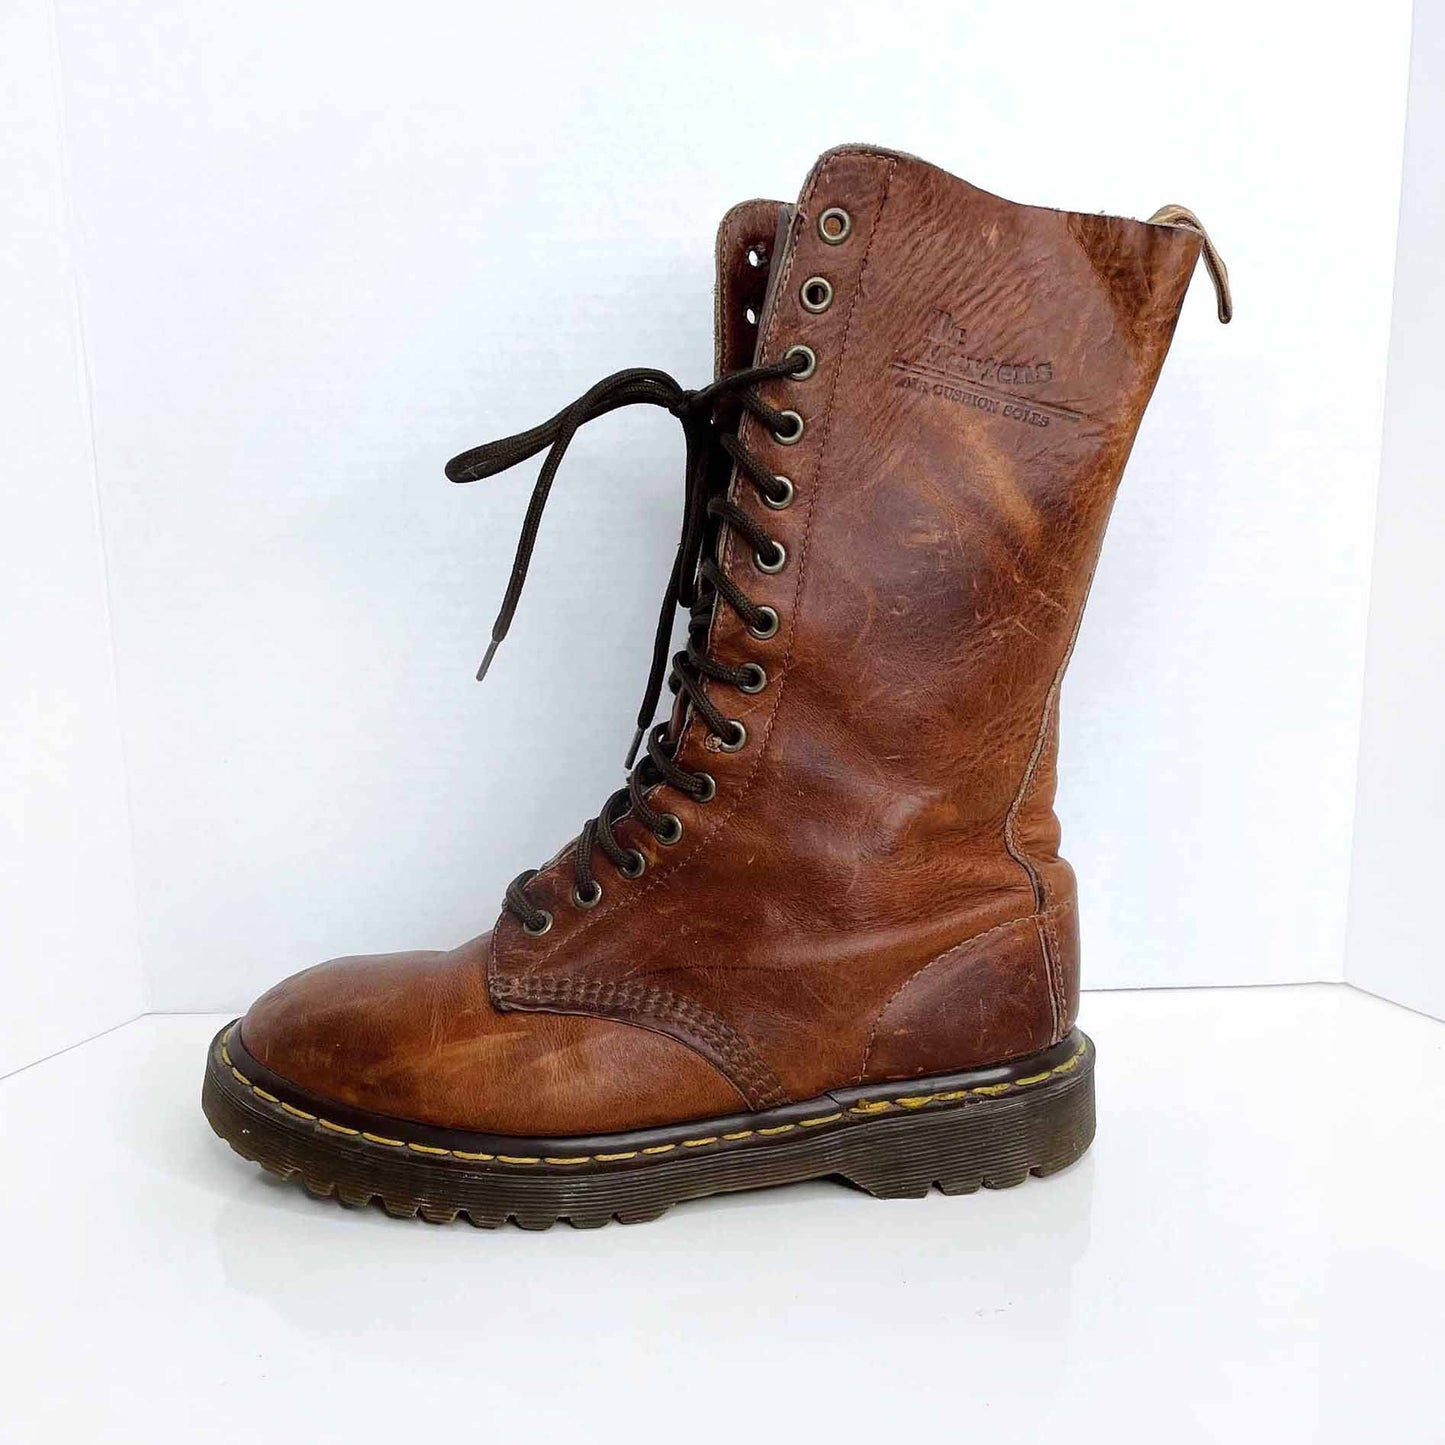 vintage 90's 14 eye original grunge doc martens brown boots - size 7 Men's